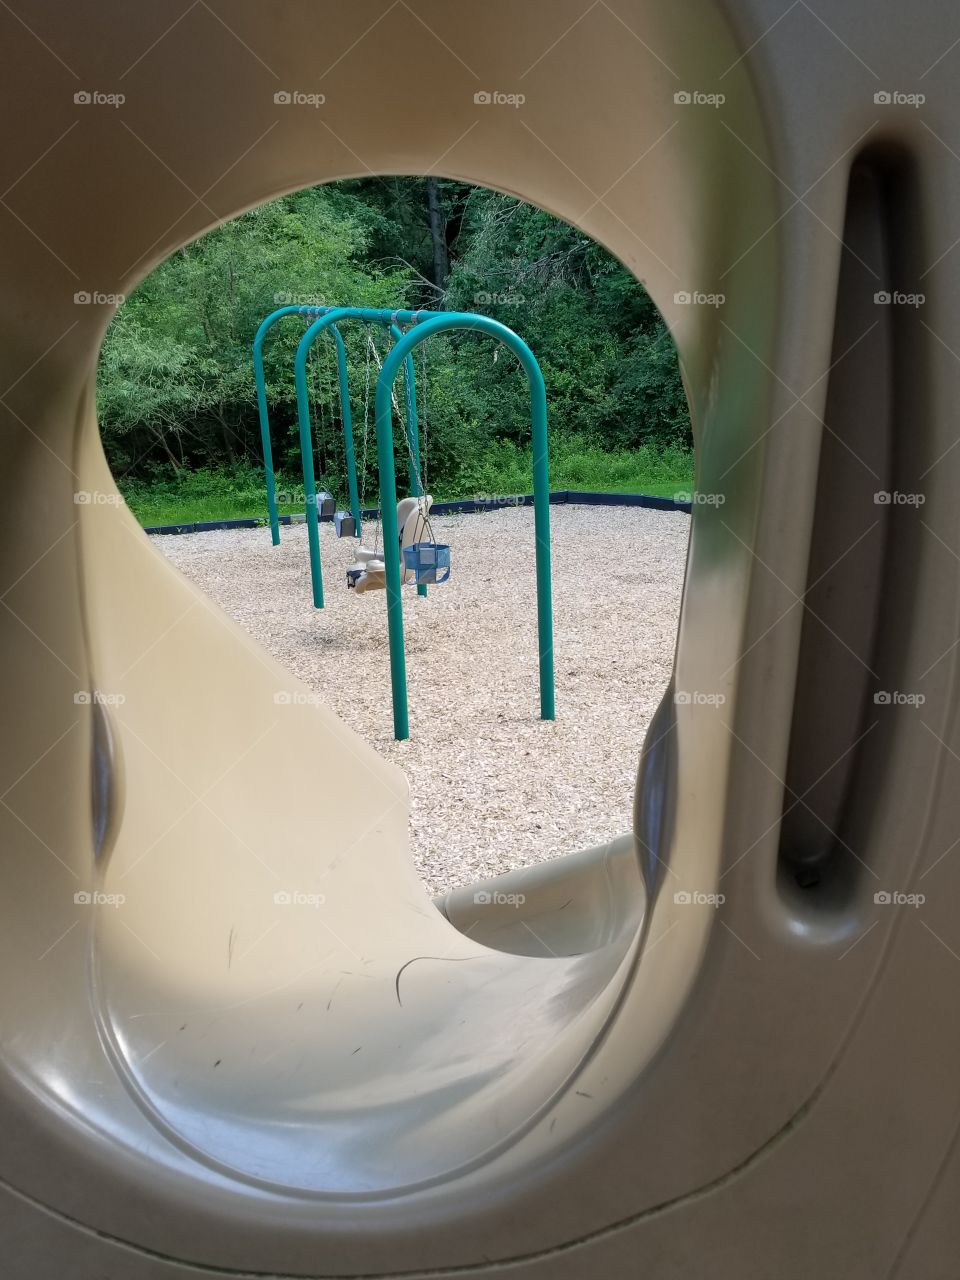 playground and swing set